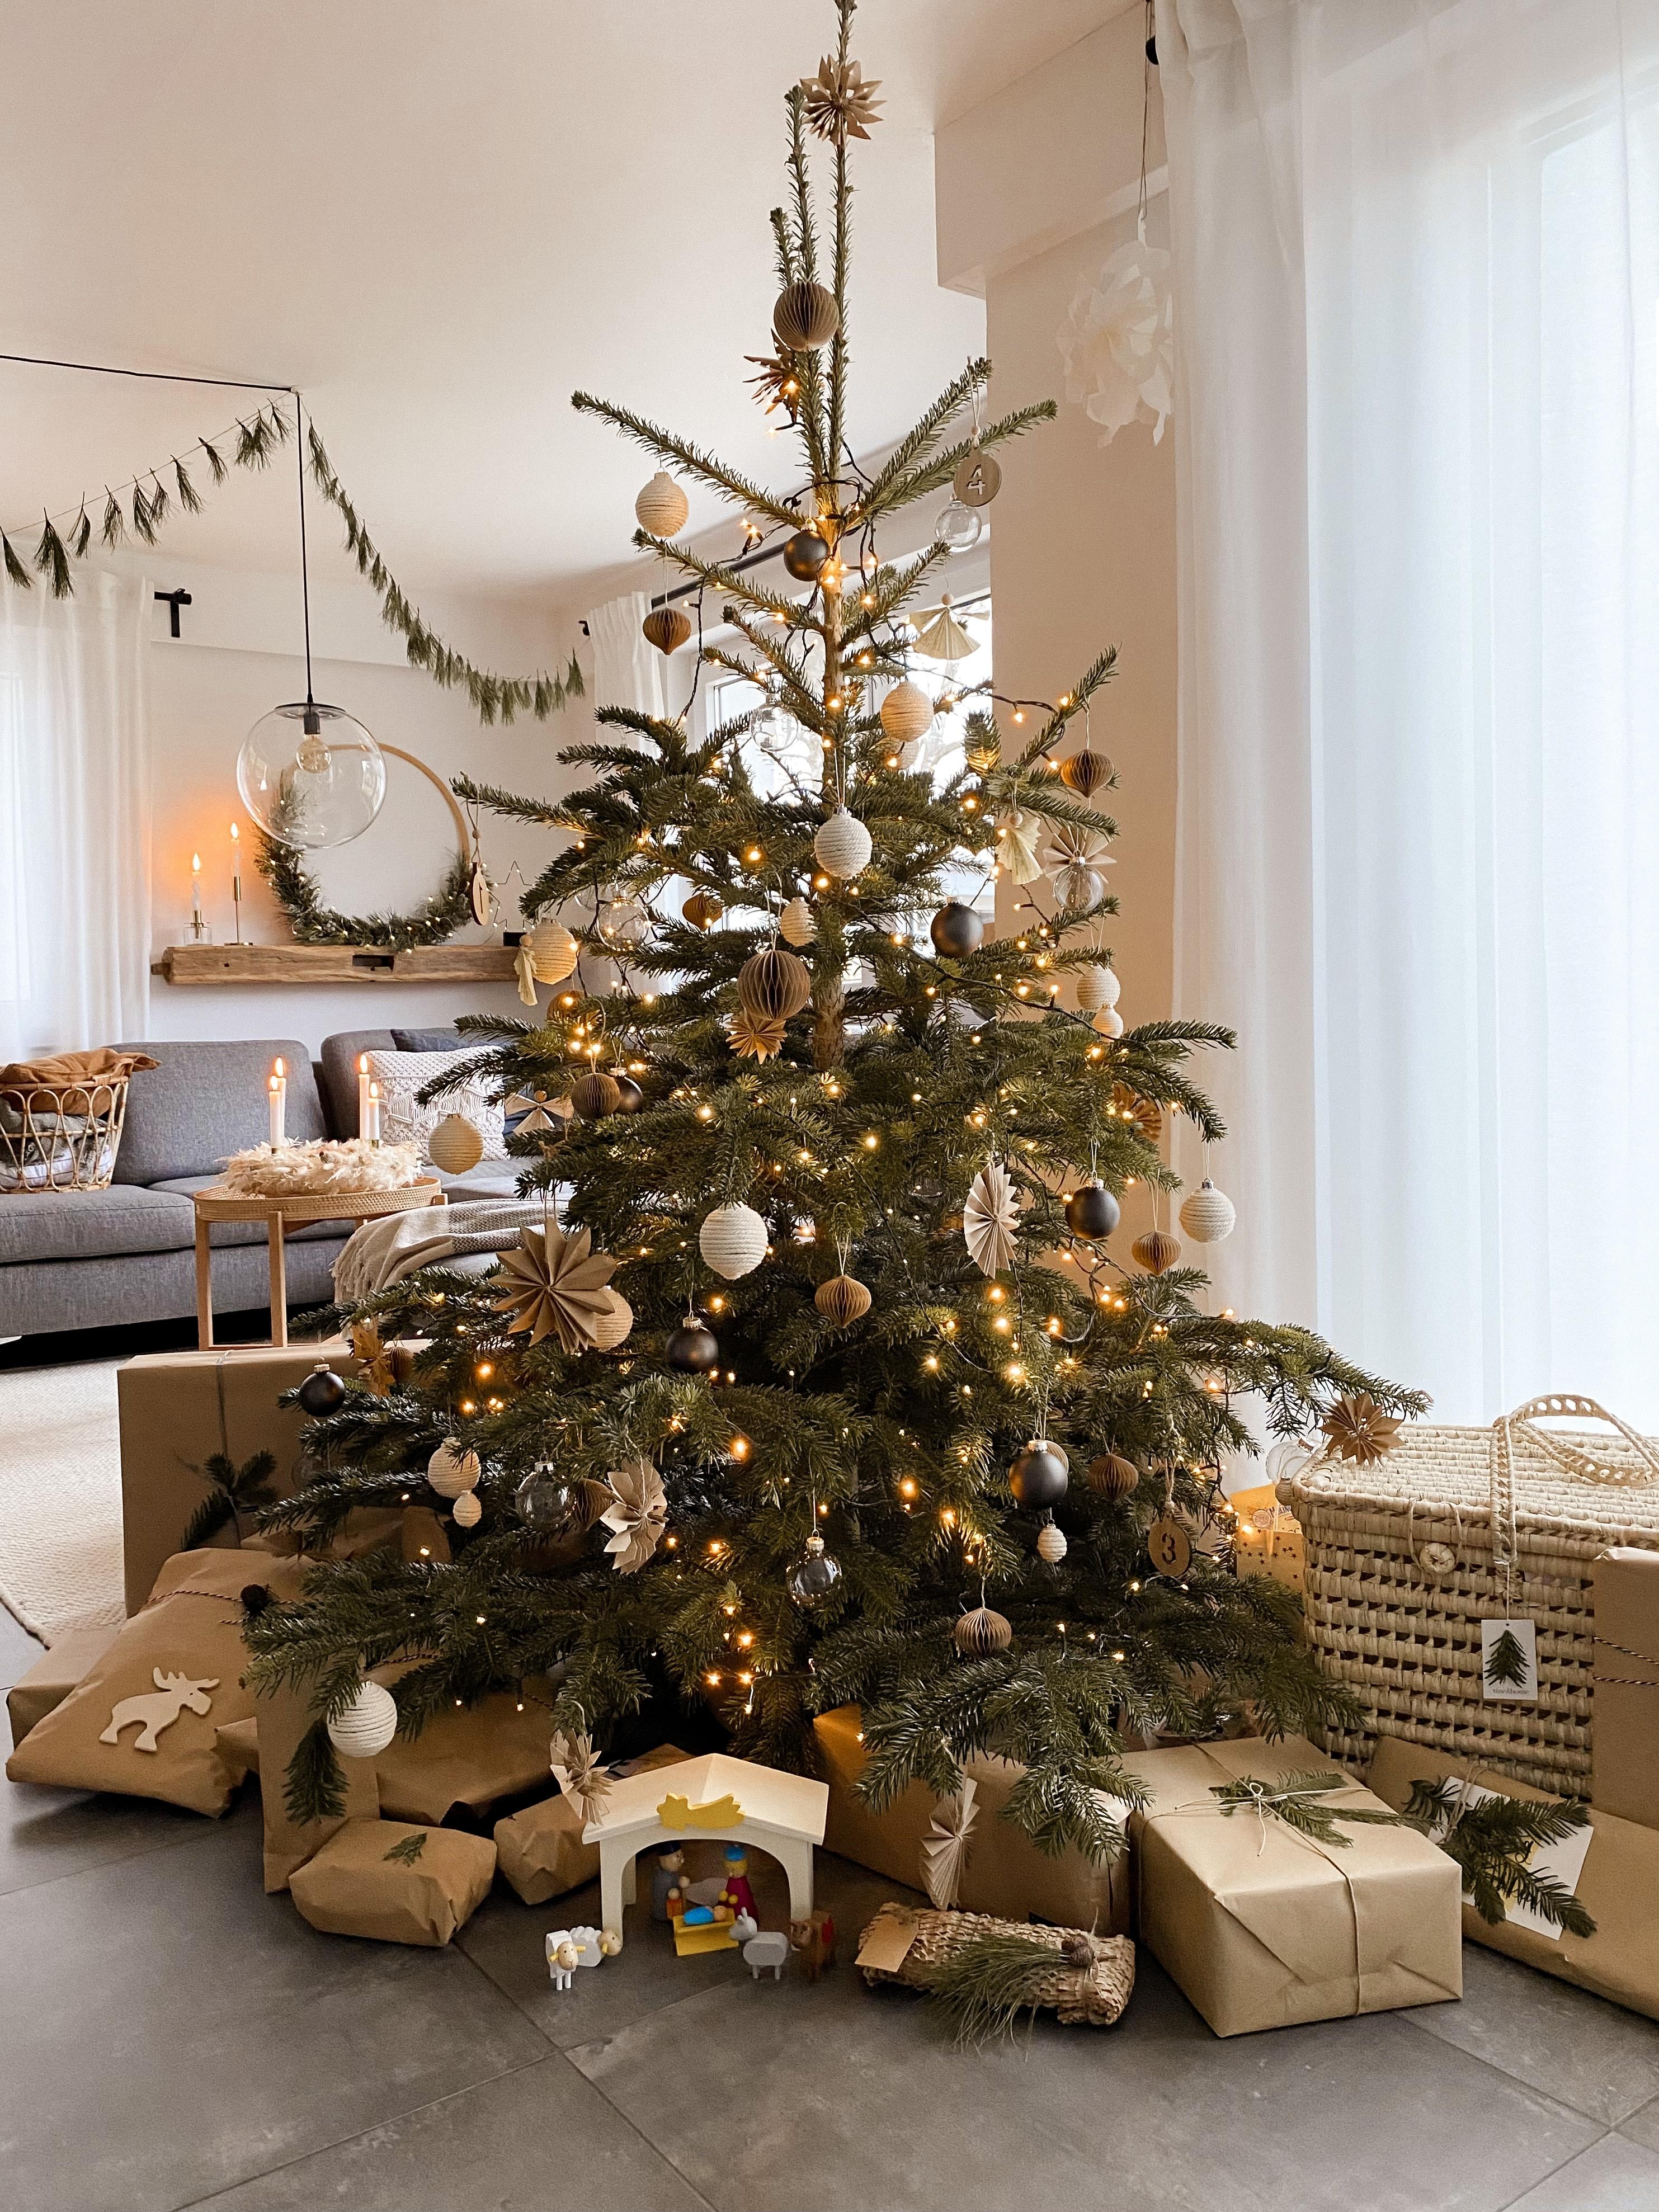 #unserbaum #weihnachtsbaum #hygge #solebich #christmas #mylvgrm